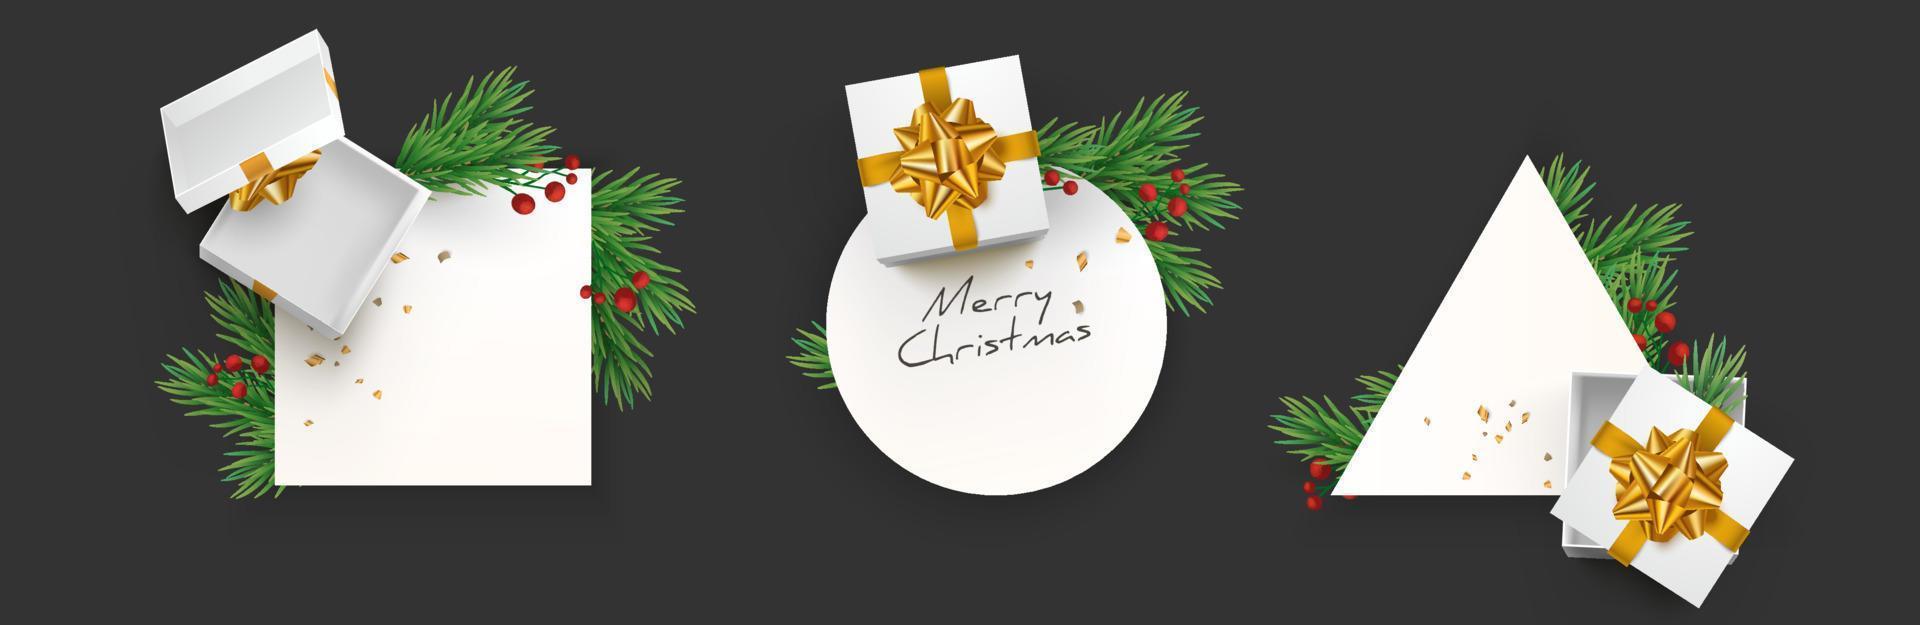 uppsättning modern elegant jul geometrisk ram med realistisk gran grenar krans, presentask och dekoration eps10 vektormall vektor